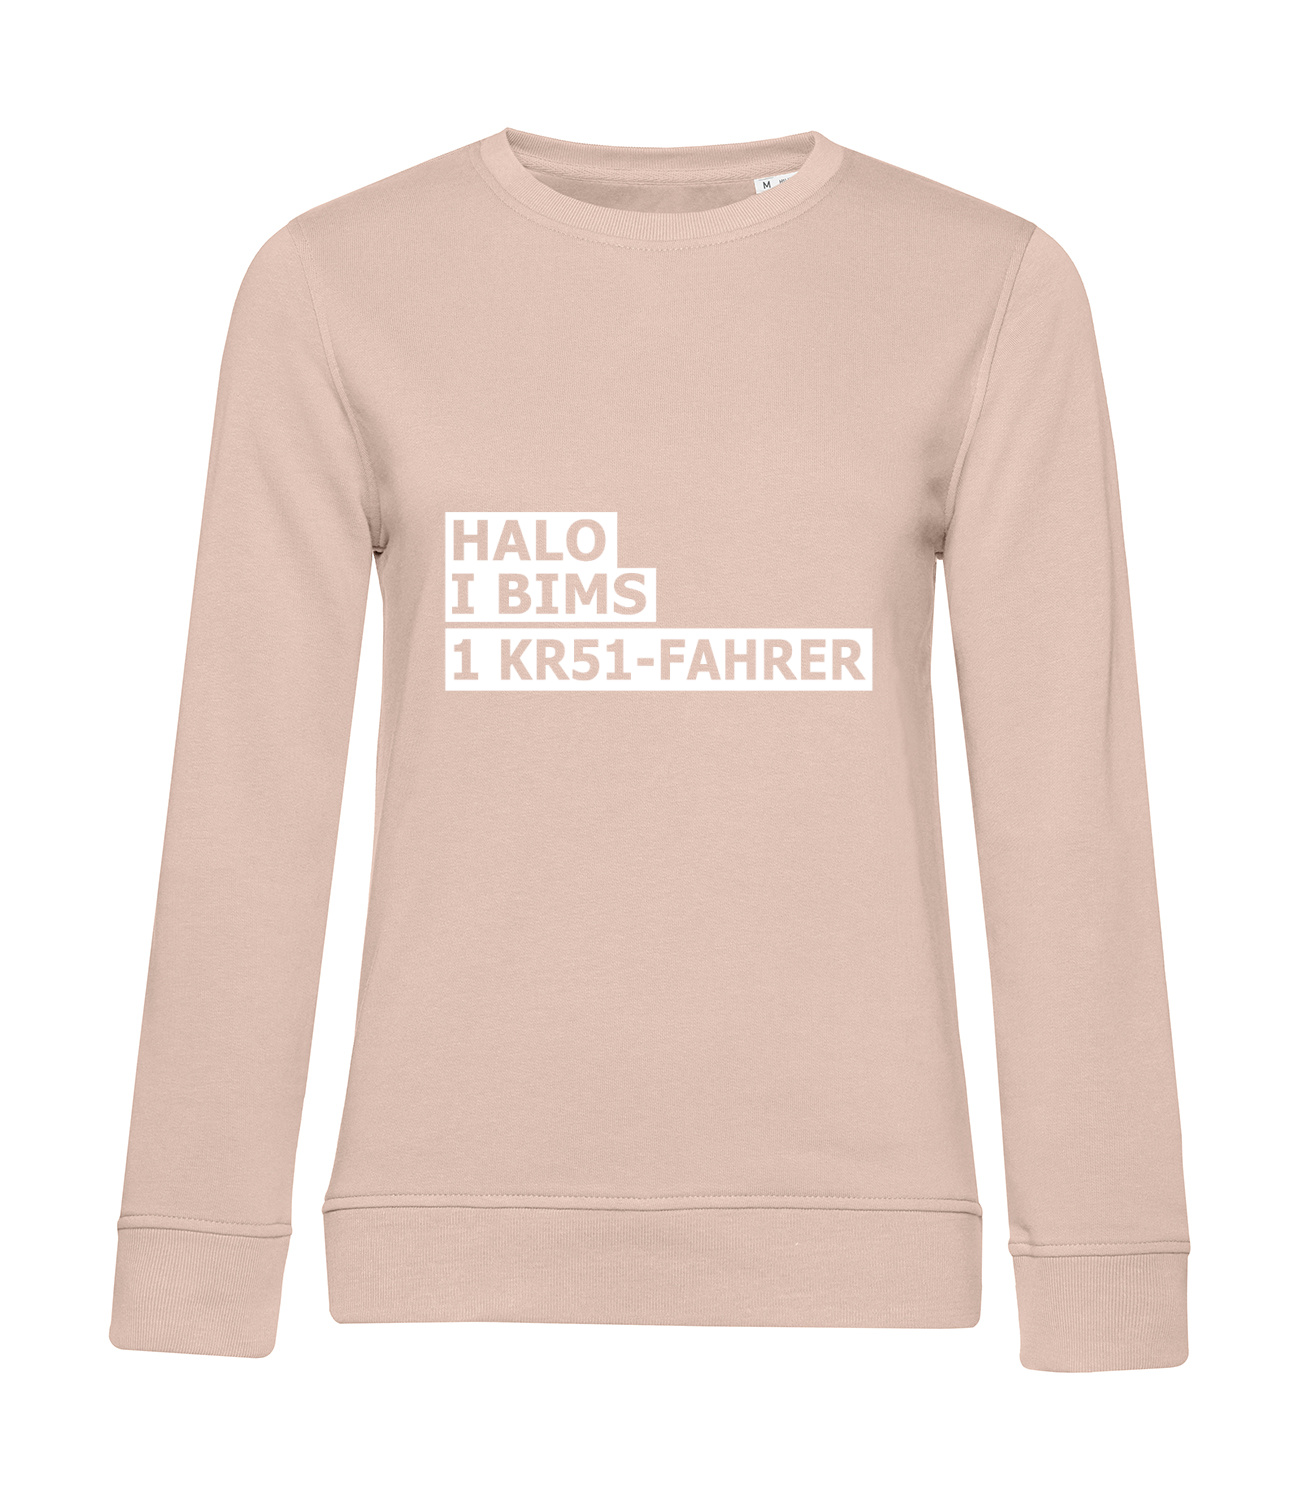 Nachhaltiges Sweatshirt Damen 2Takter - Halo I bims 1 KR51-Fahrer